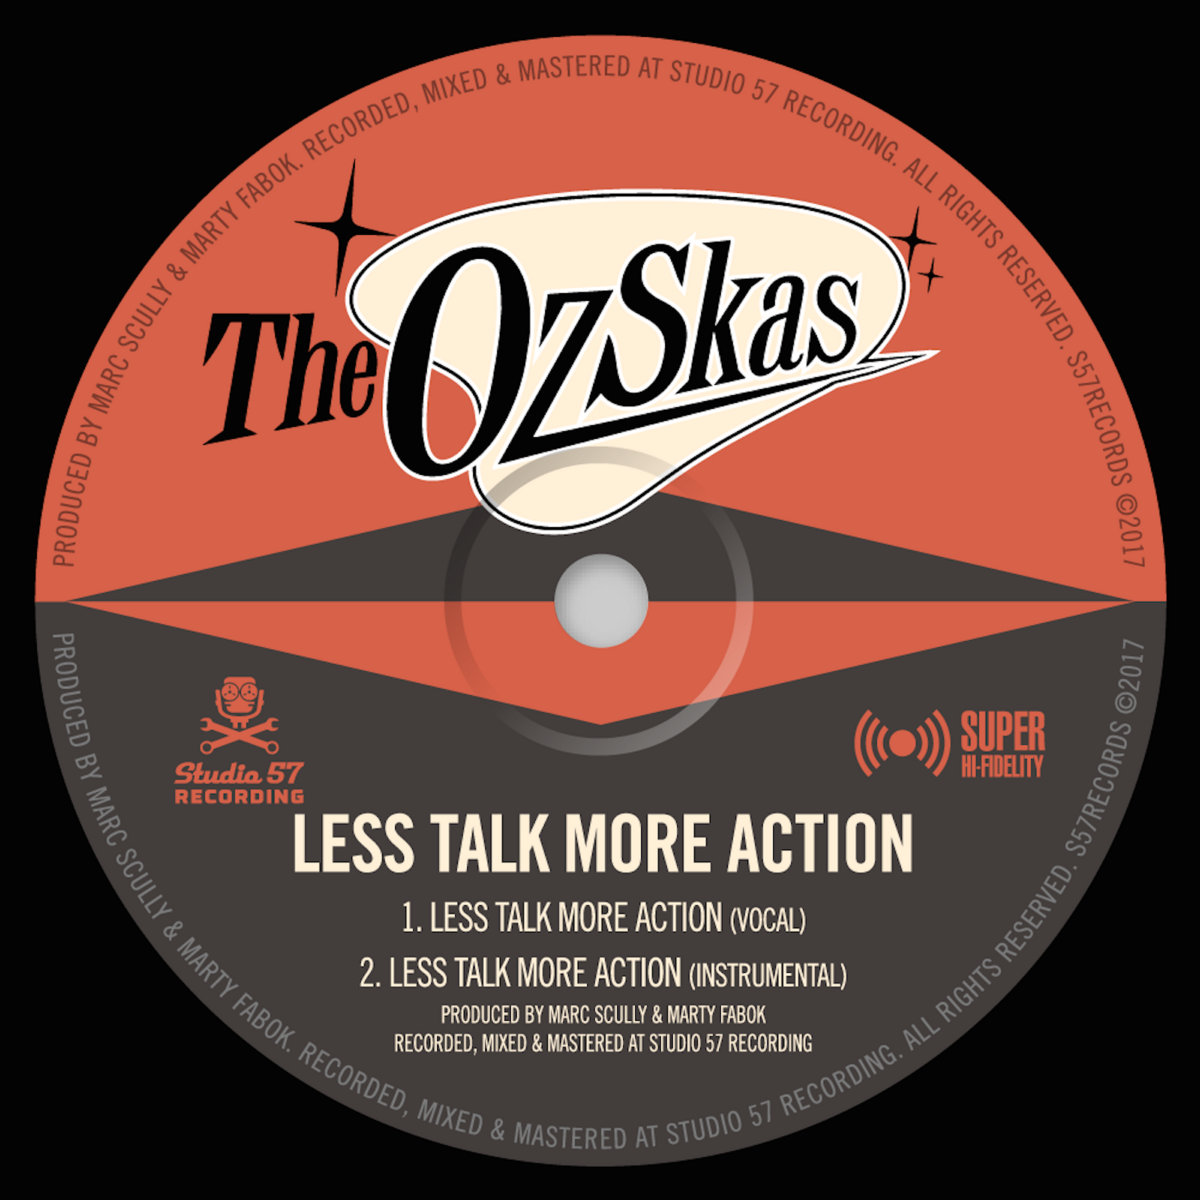 Less talk группа. More talk. Talk more talk less. Talk no more Instrumental. Less talk more